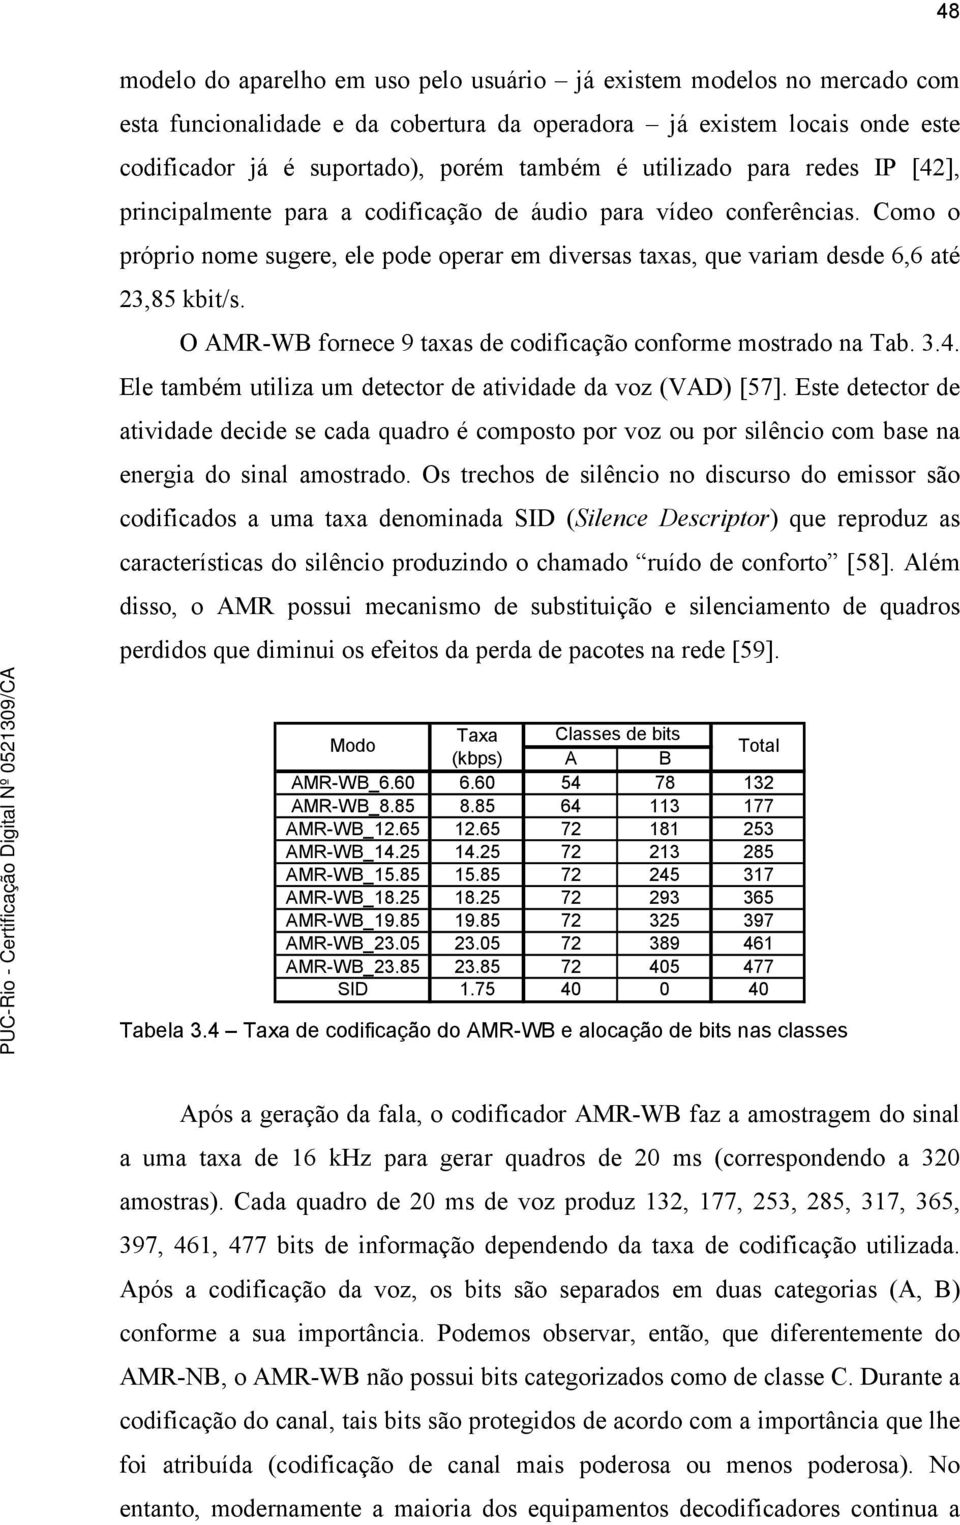 O AMR-WB fornece 9 taxas de codificação conforme mostrado na Tab. 3.4. Ele também utiliza um detector de atividade da voz (VAD) [57].